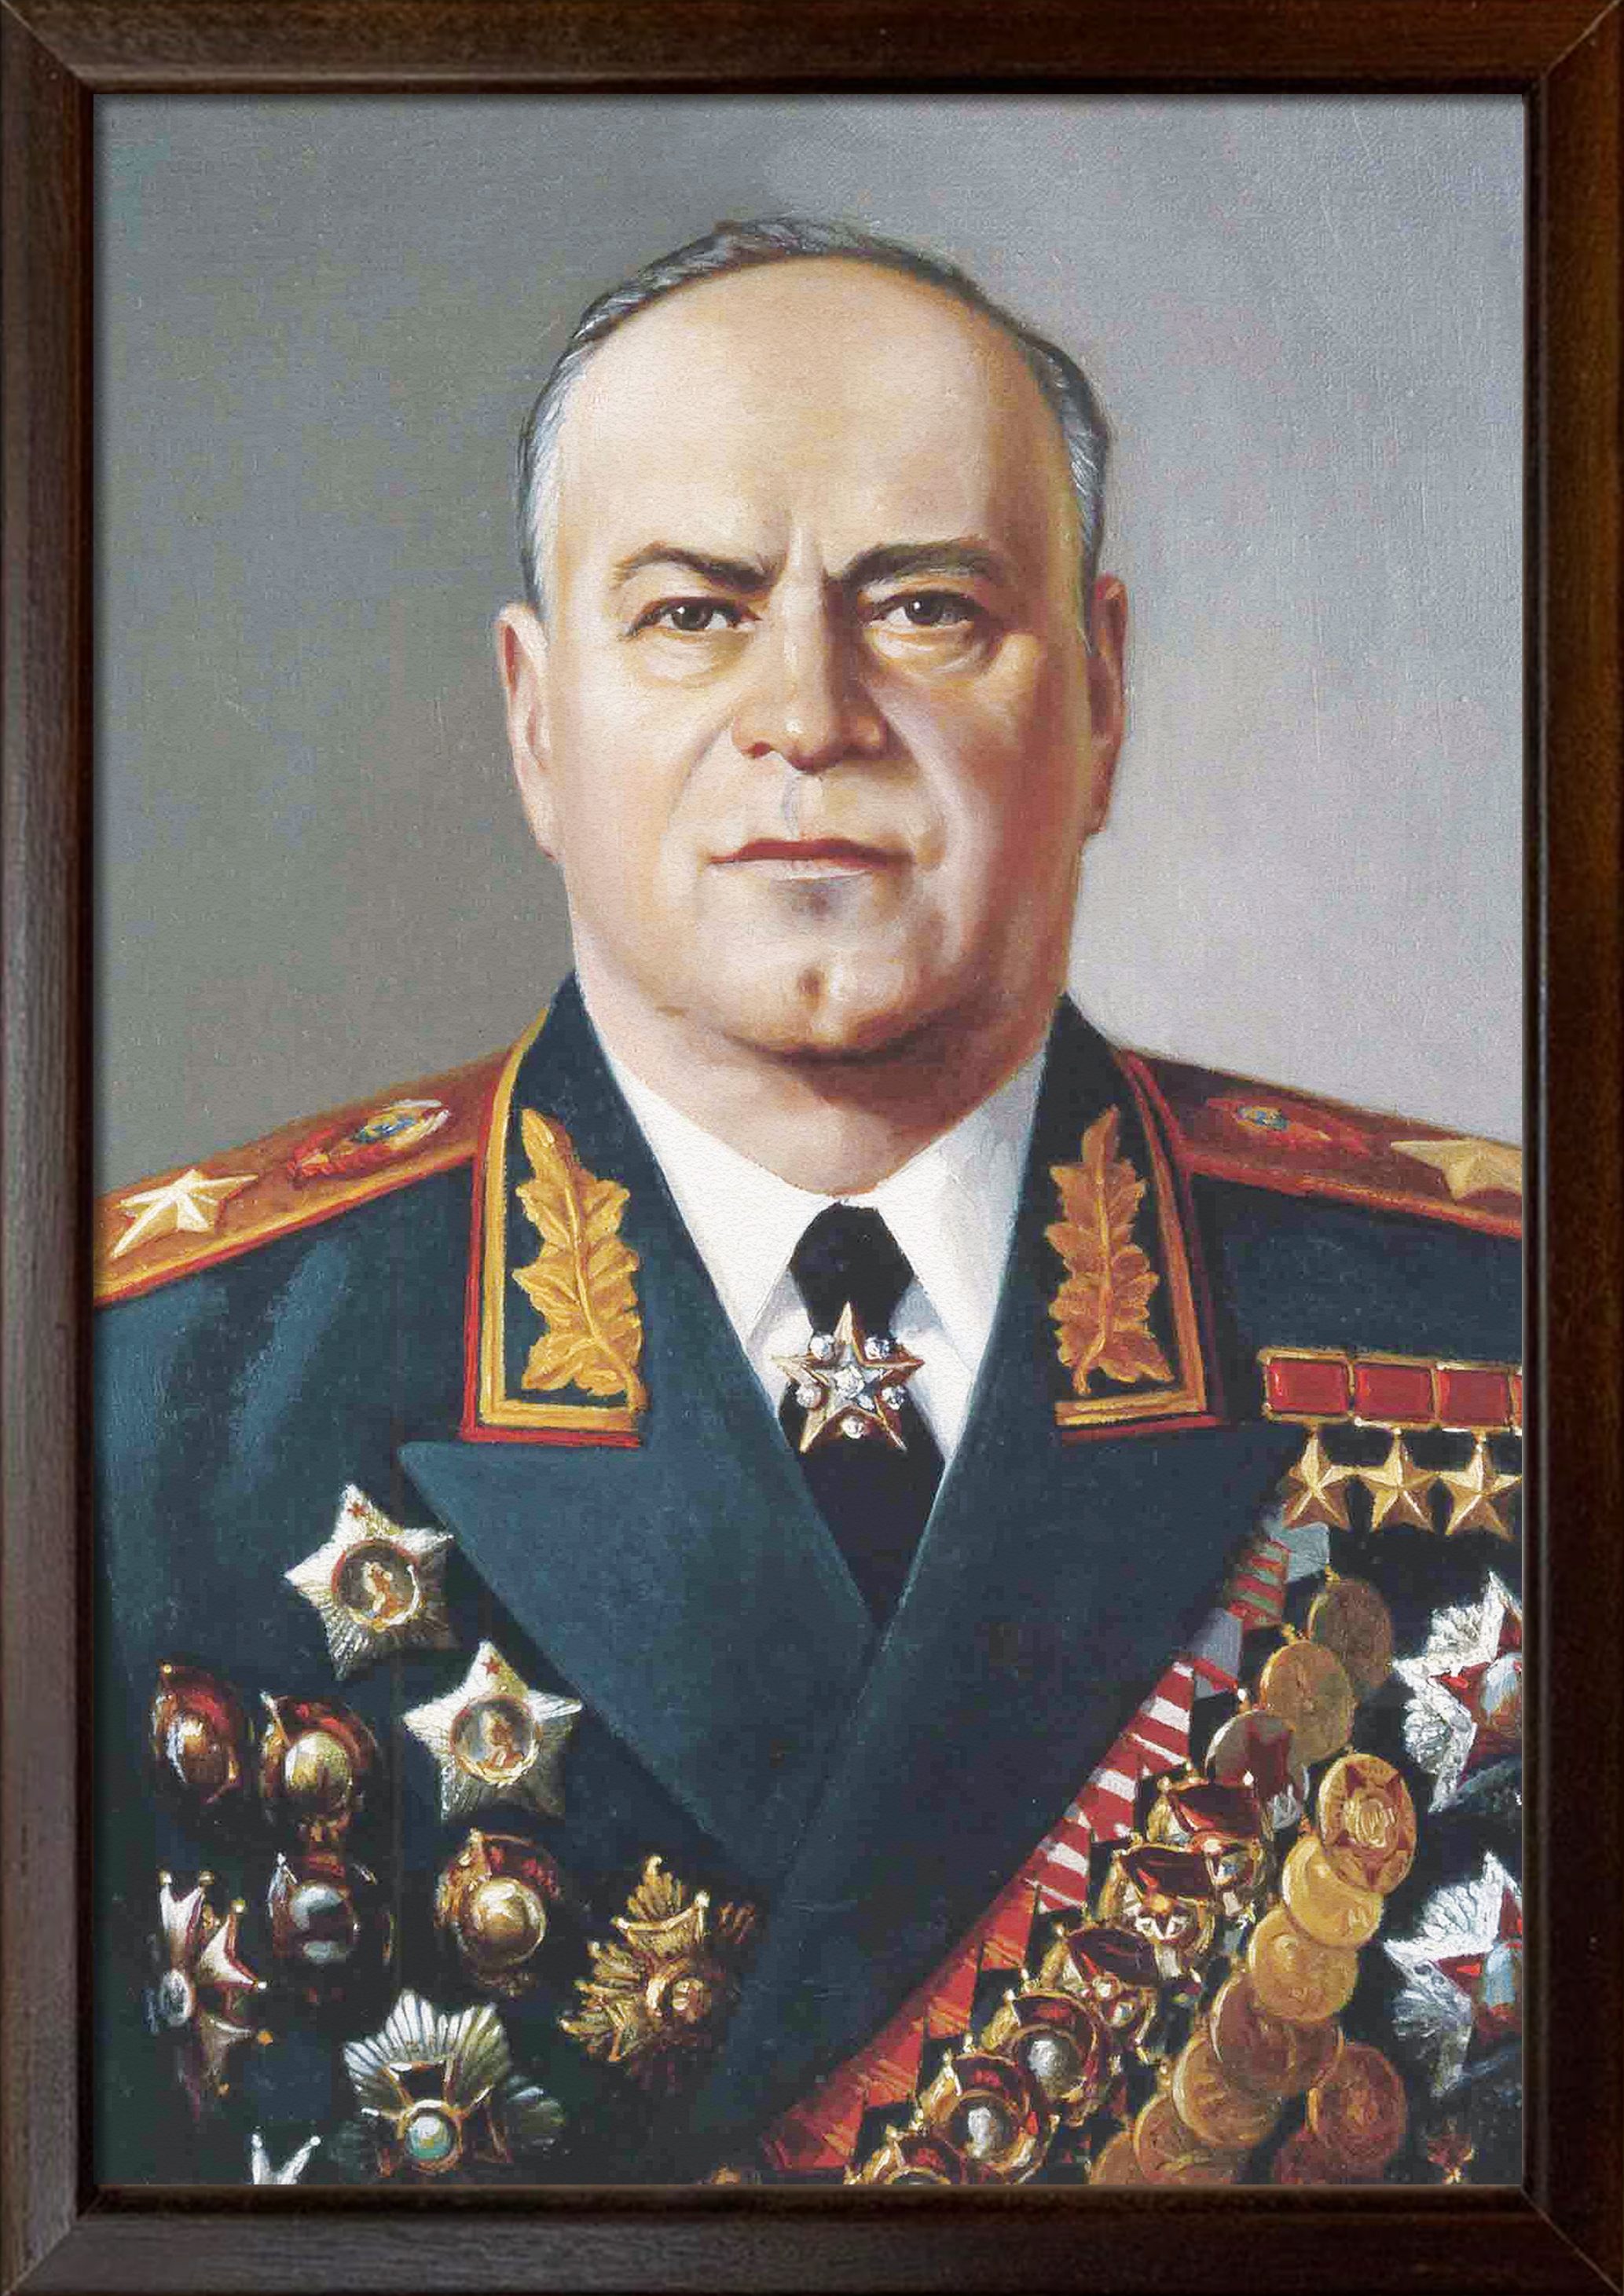 Жуков Георгий Константинович портрет